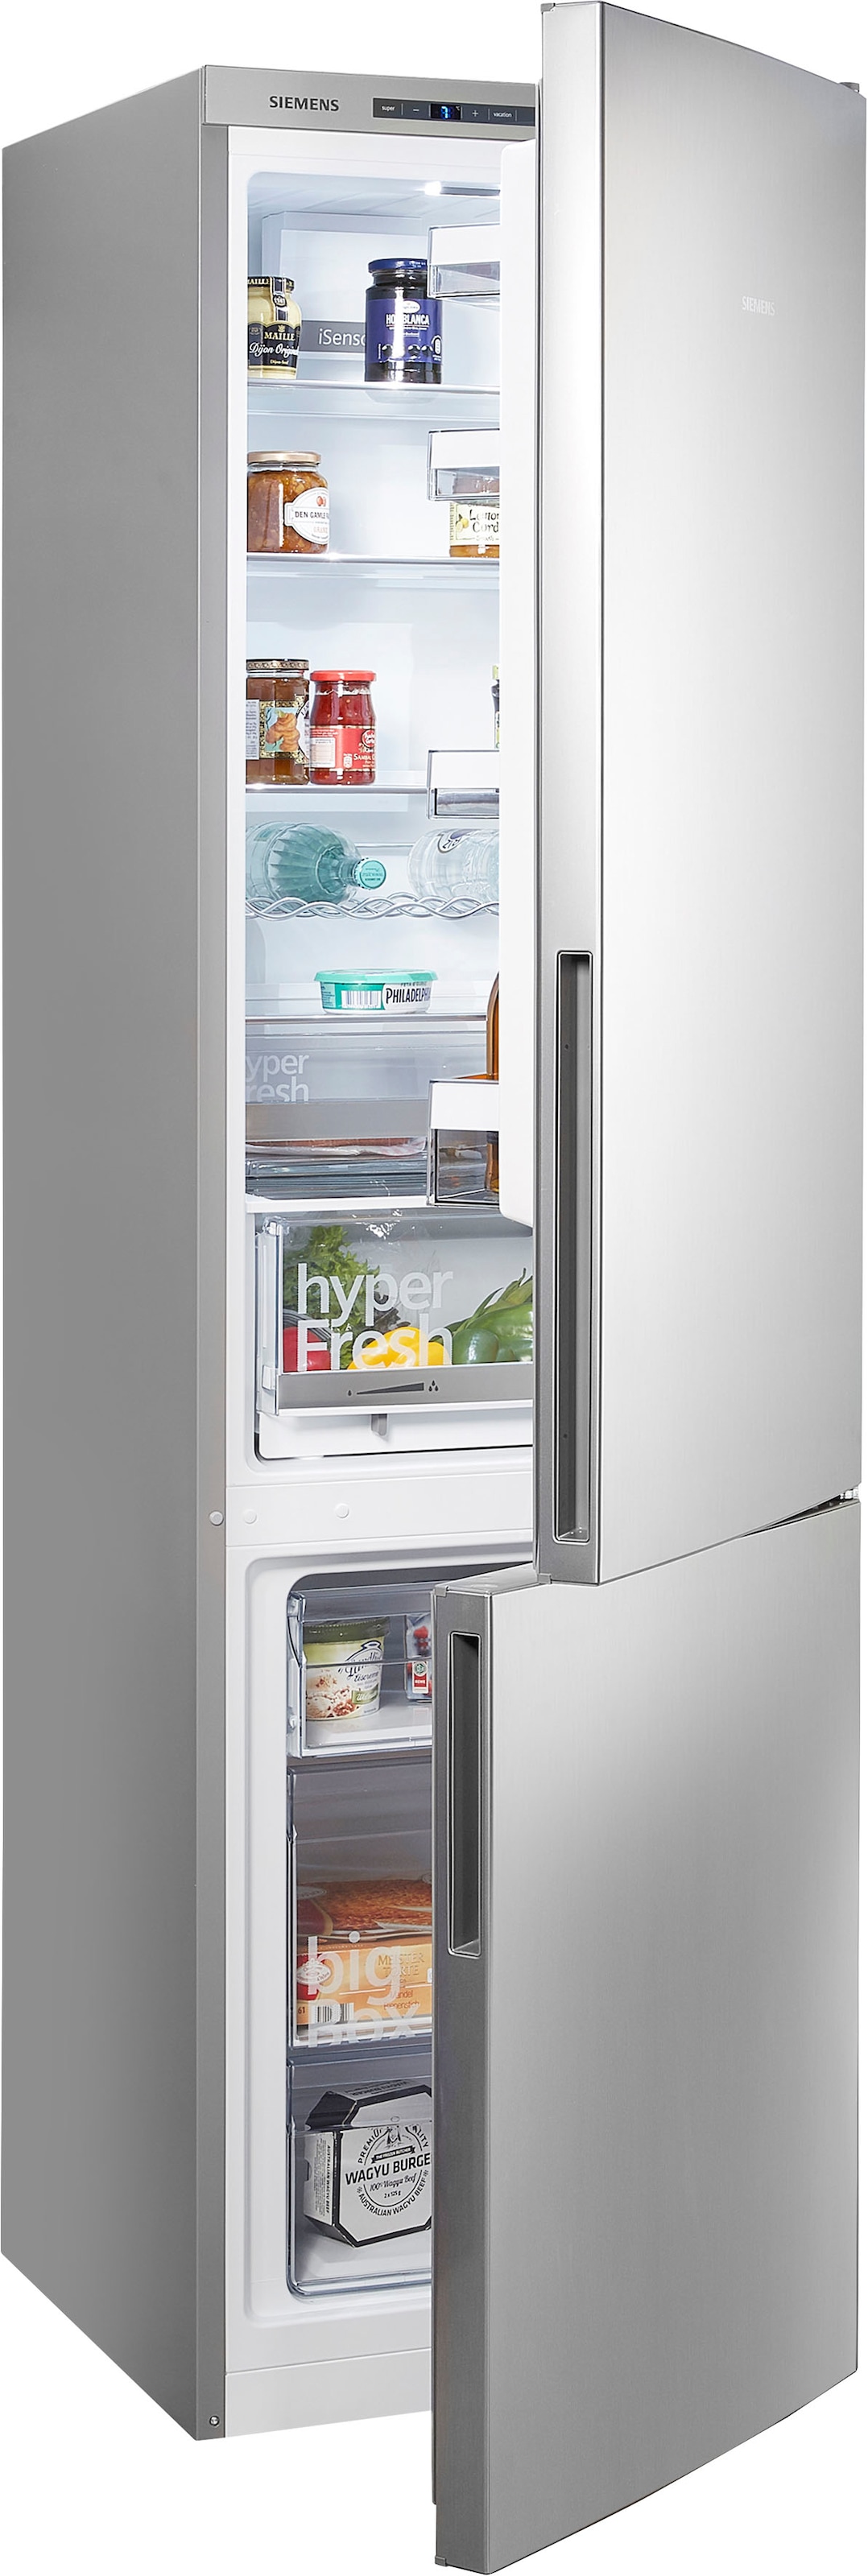 Siemens Kühlschränke mit flexibler Teilzahlung bei OTTO